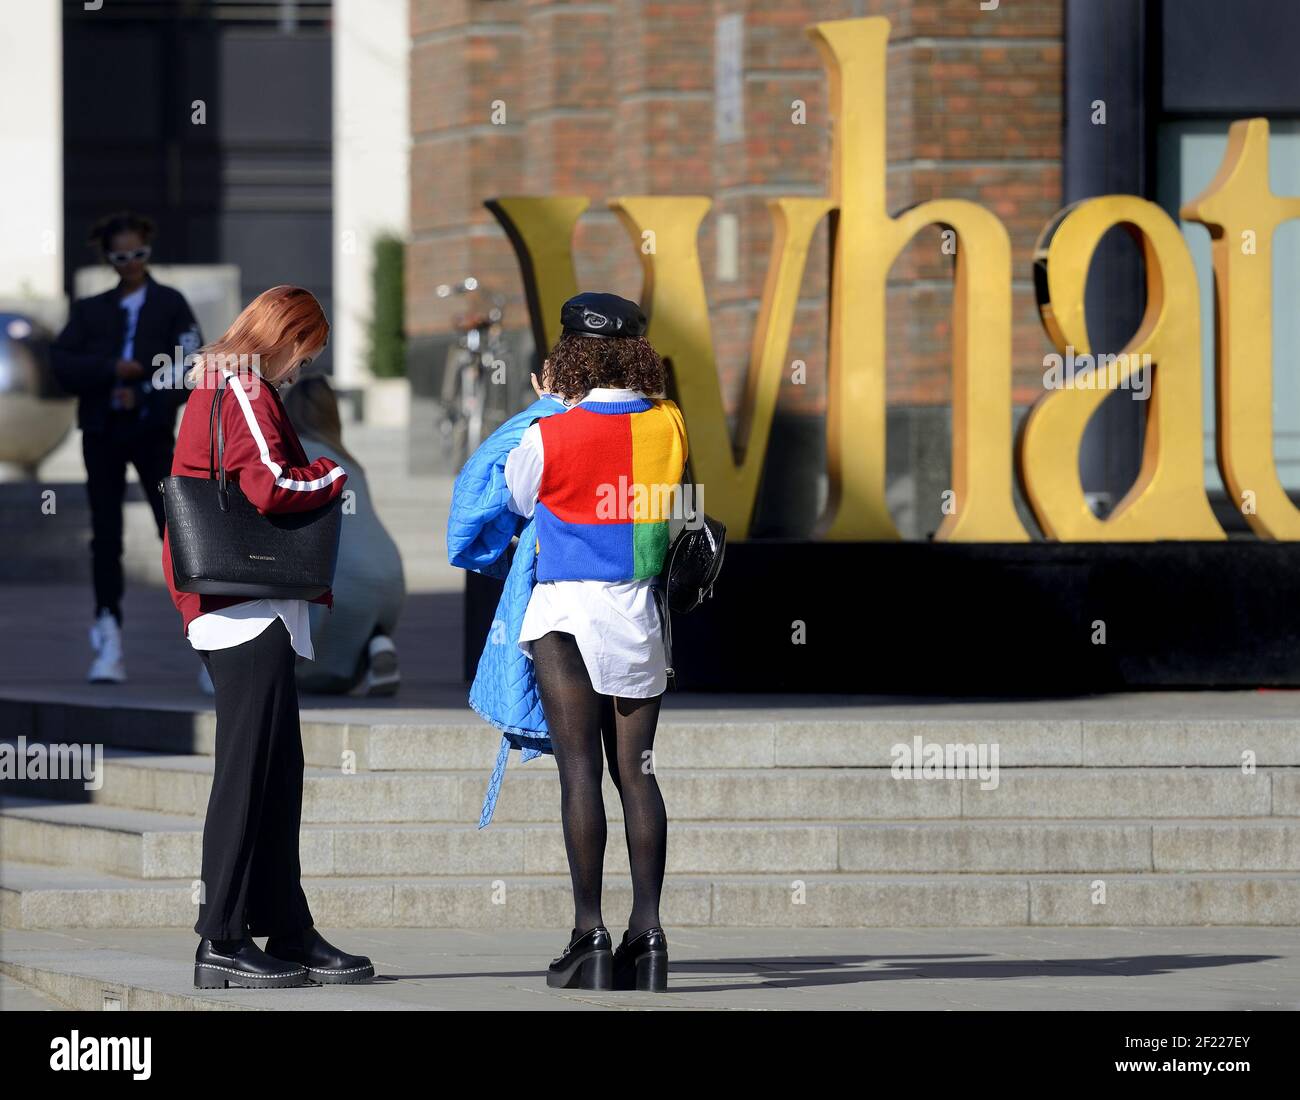 Londra, Inghilterra, Regno Unito. Giovane donna dai vestiti luminosi che fotografa un'installazione d'arte vicino alla Cattedrale di San Paolo Foto Stock